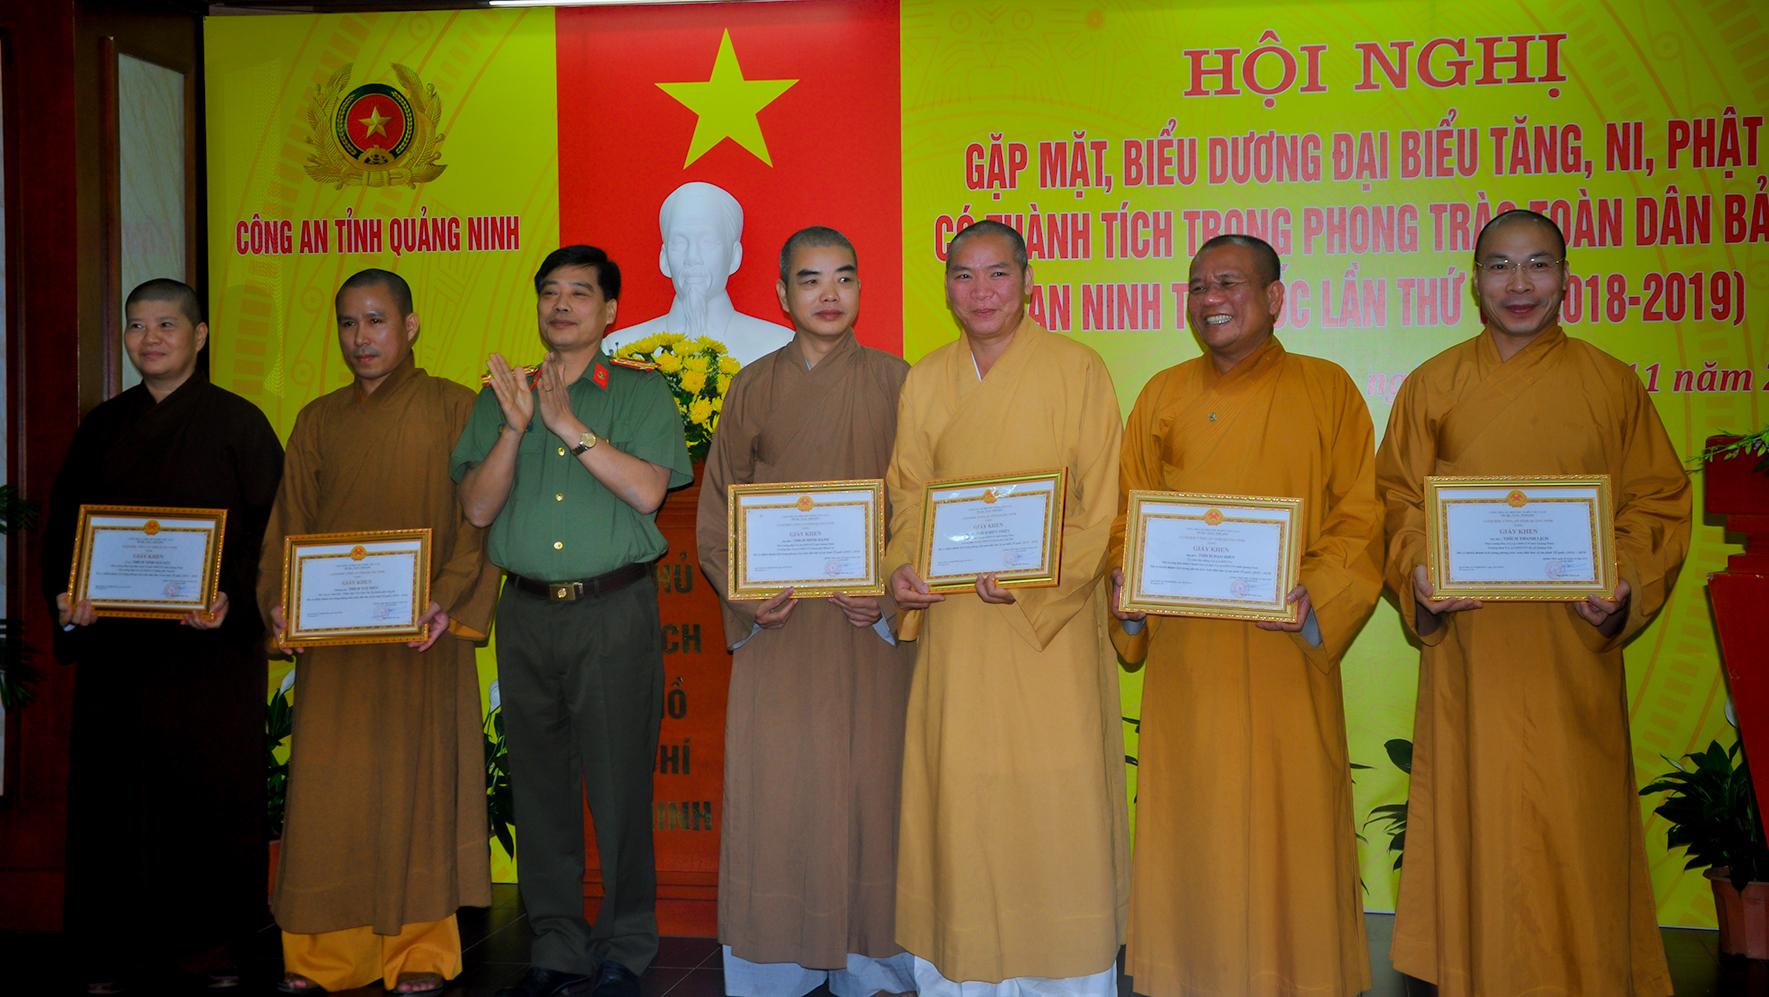 Công an tỉnh Quảng Ninh gặp mặt biểu dương tăng ni Phật tử có thành tích trong phong trào toàn dân bảo vệ ANTQ 